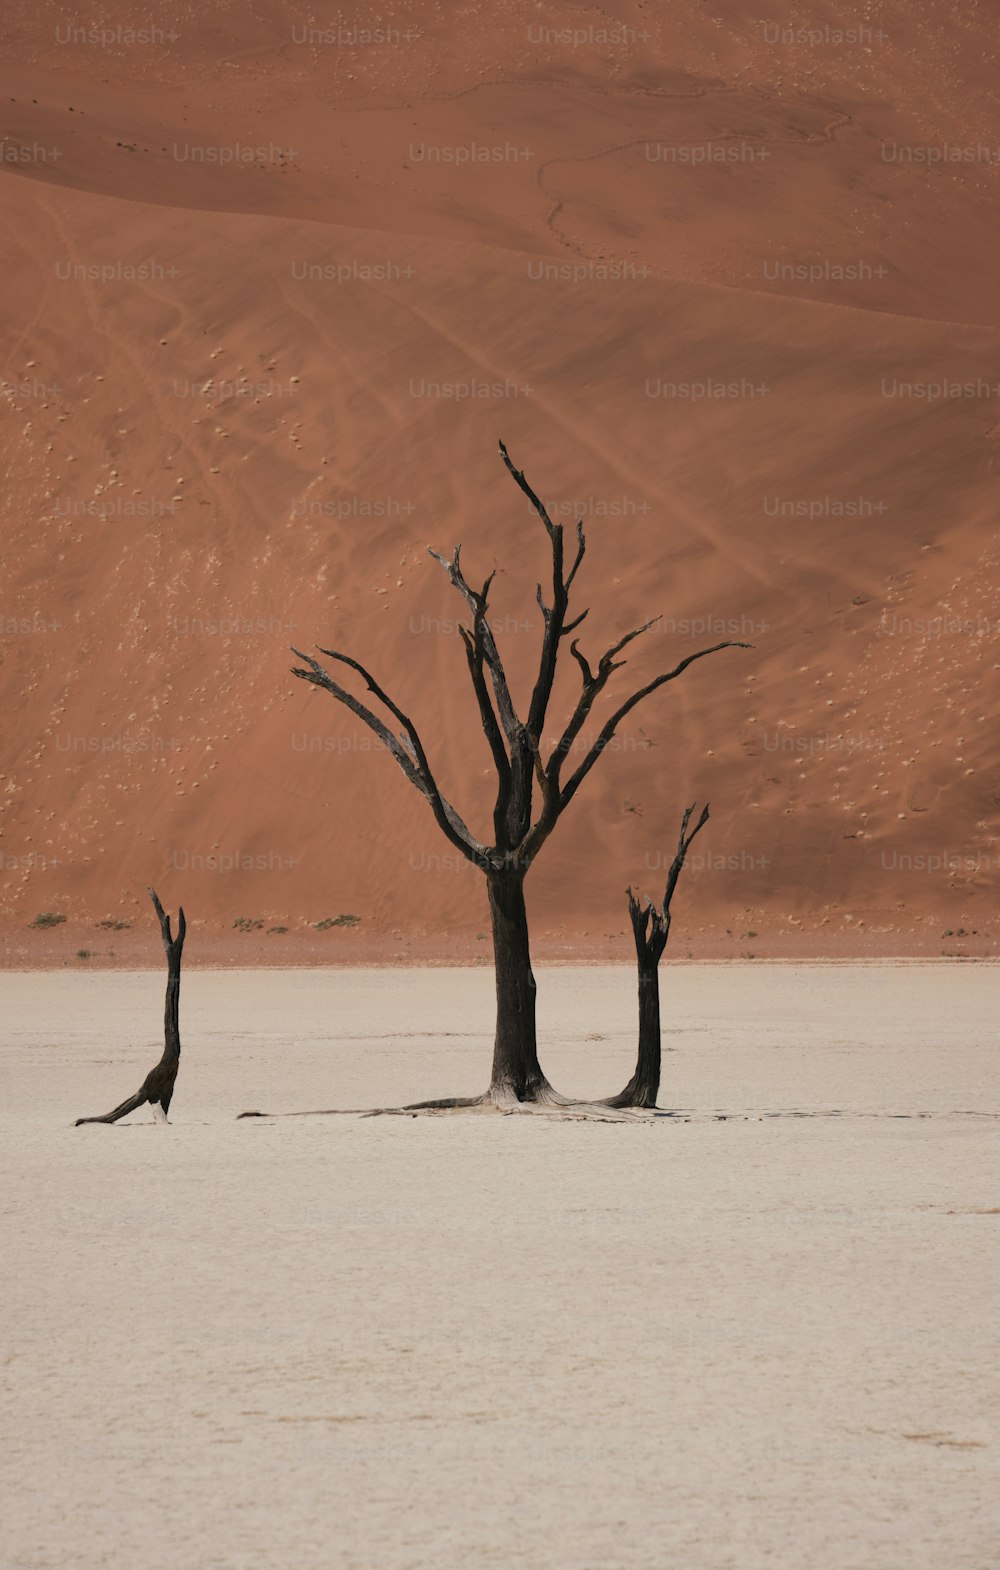 Un grupo de árboles muertos en medio de un desierto